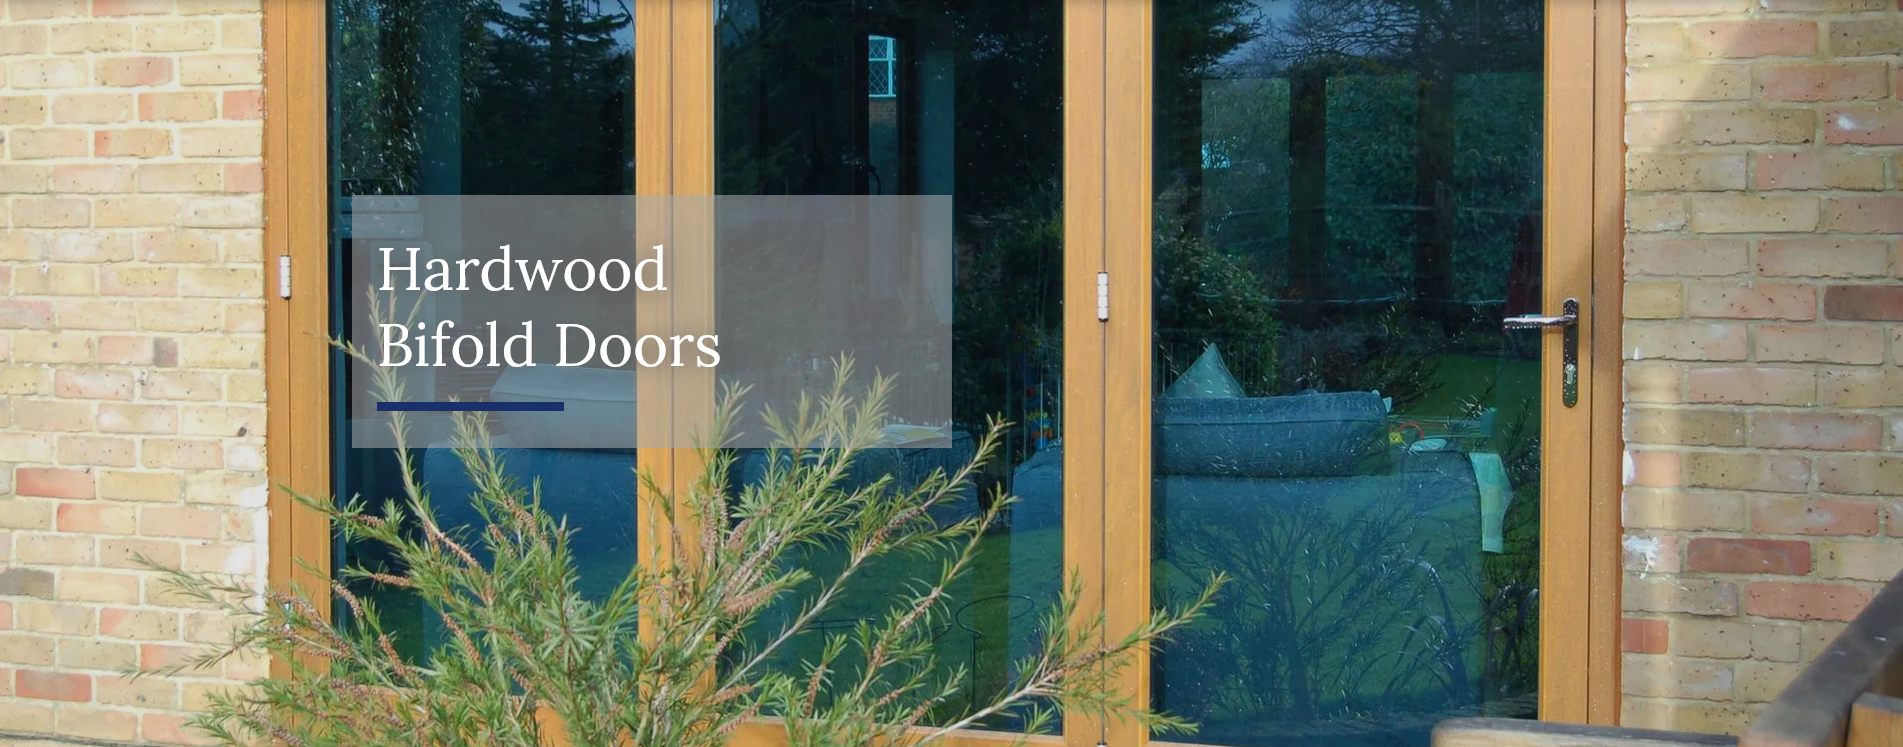 Hardwood Bifold Doors